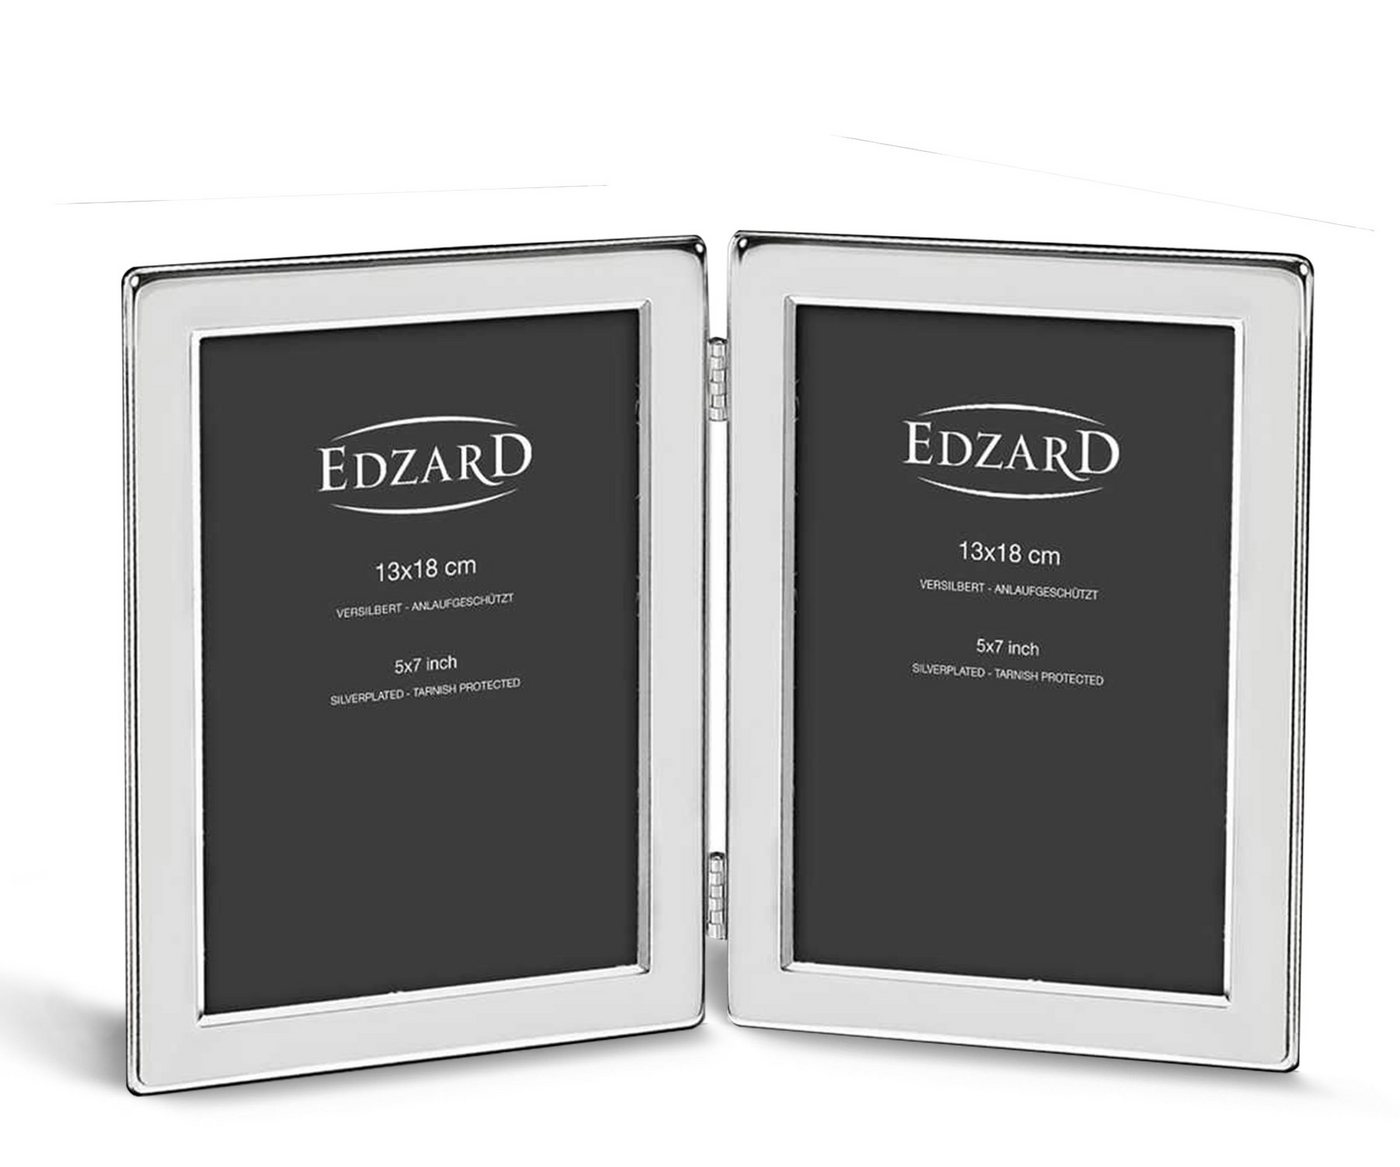 EDZARD Bilderrahmen Salerno, versilbert und anlaufgeschützt, für zwei 13x18 cm Fotos von EDZARD